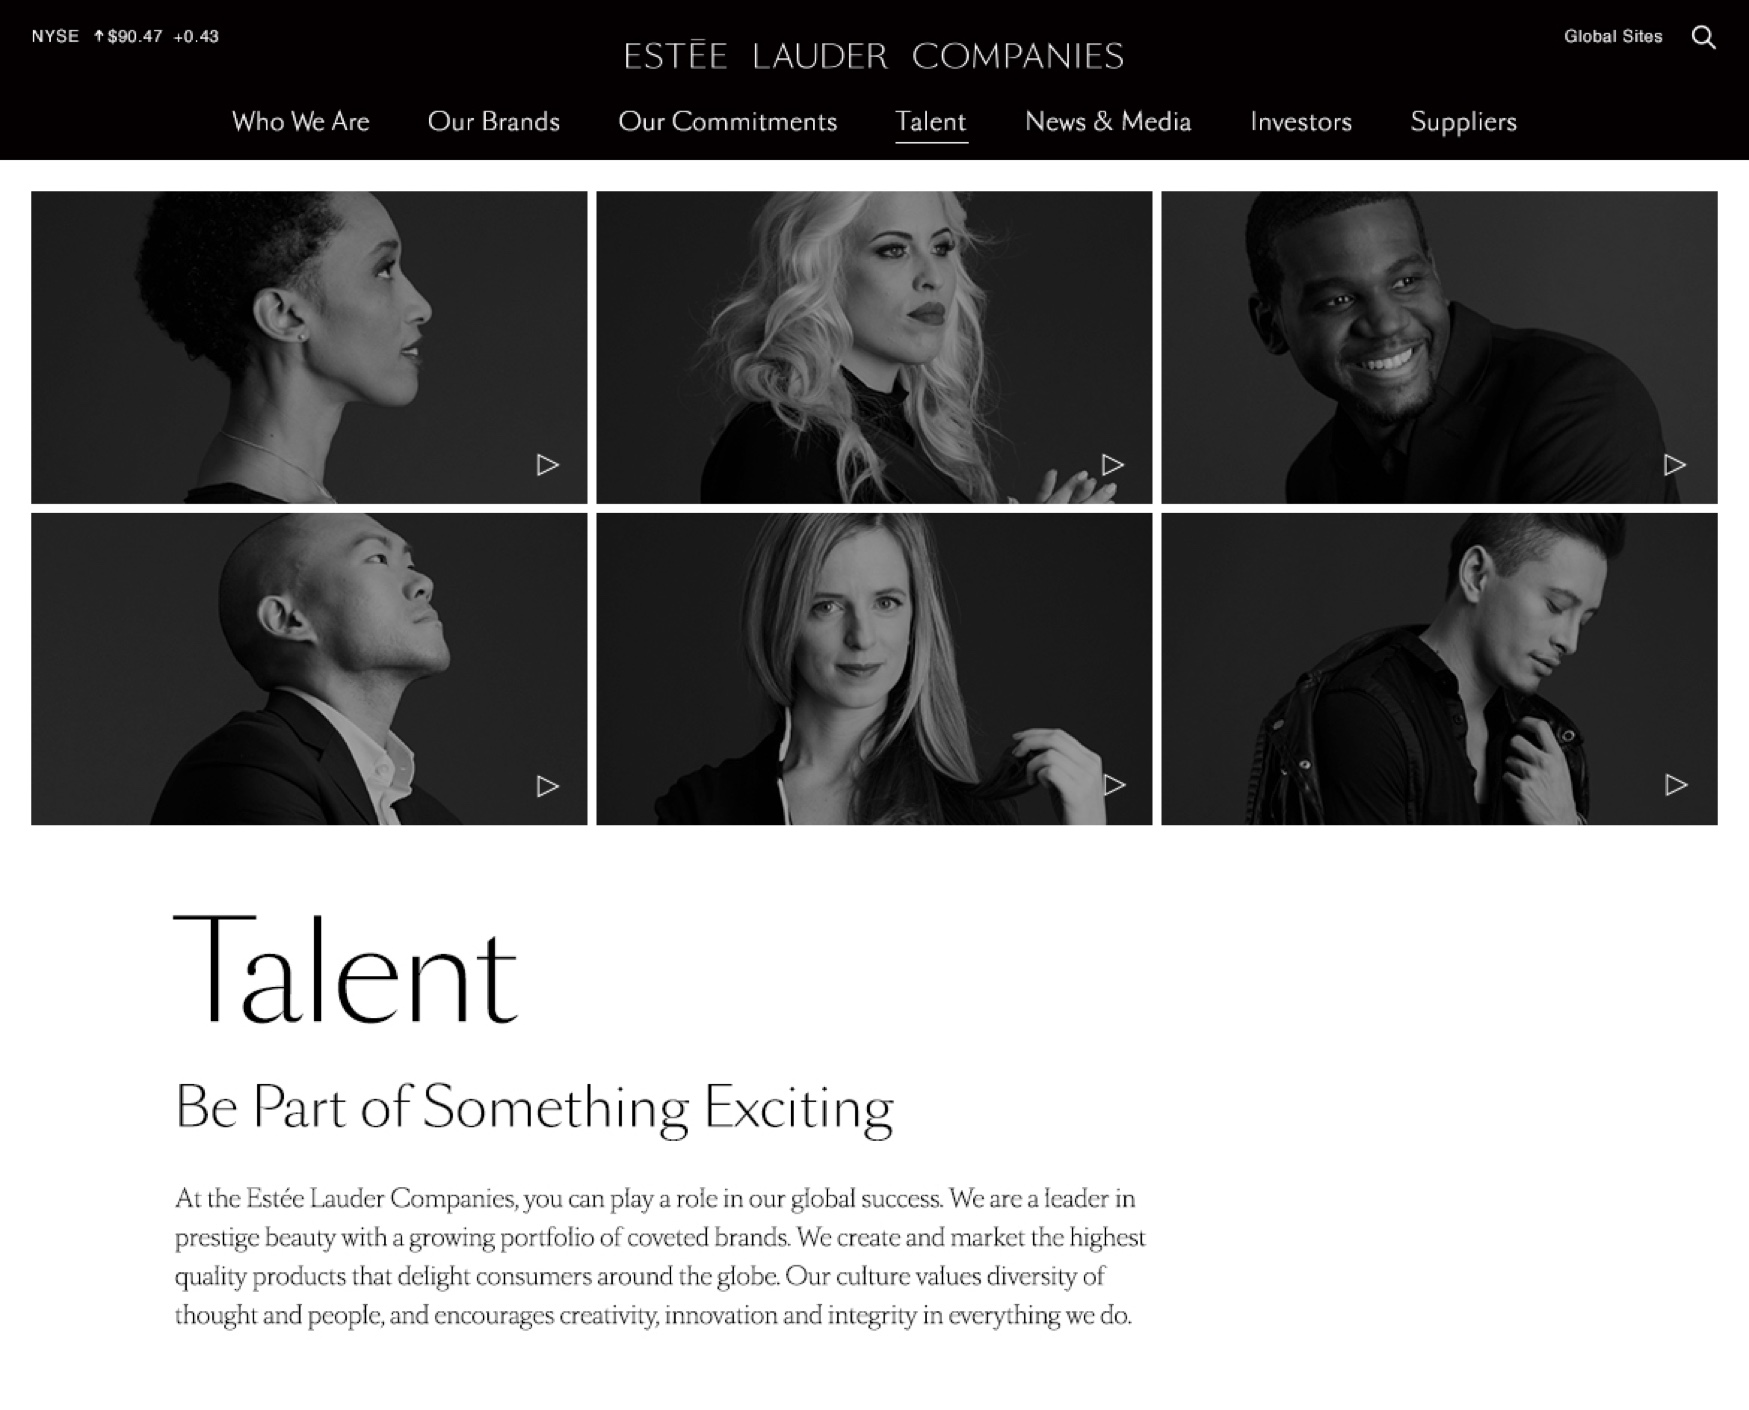 Estée Lauder Companies website talent page